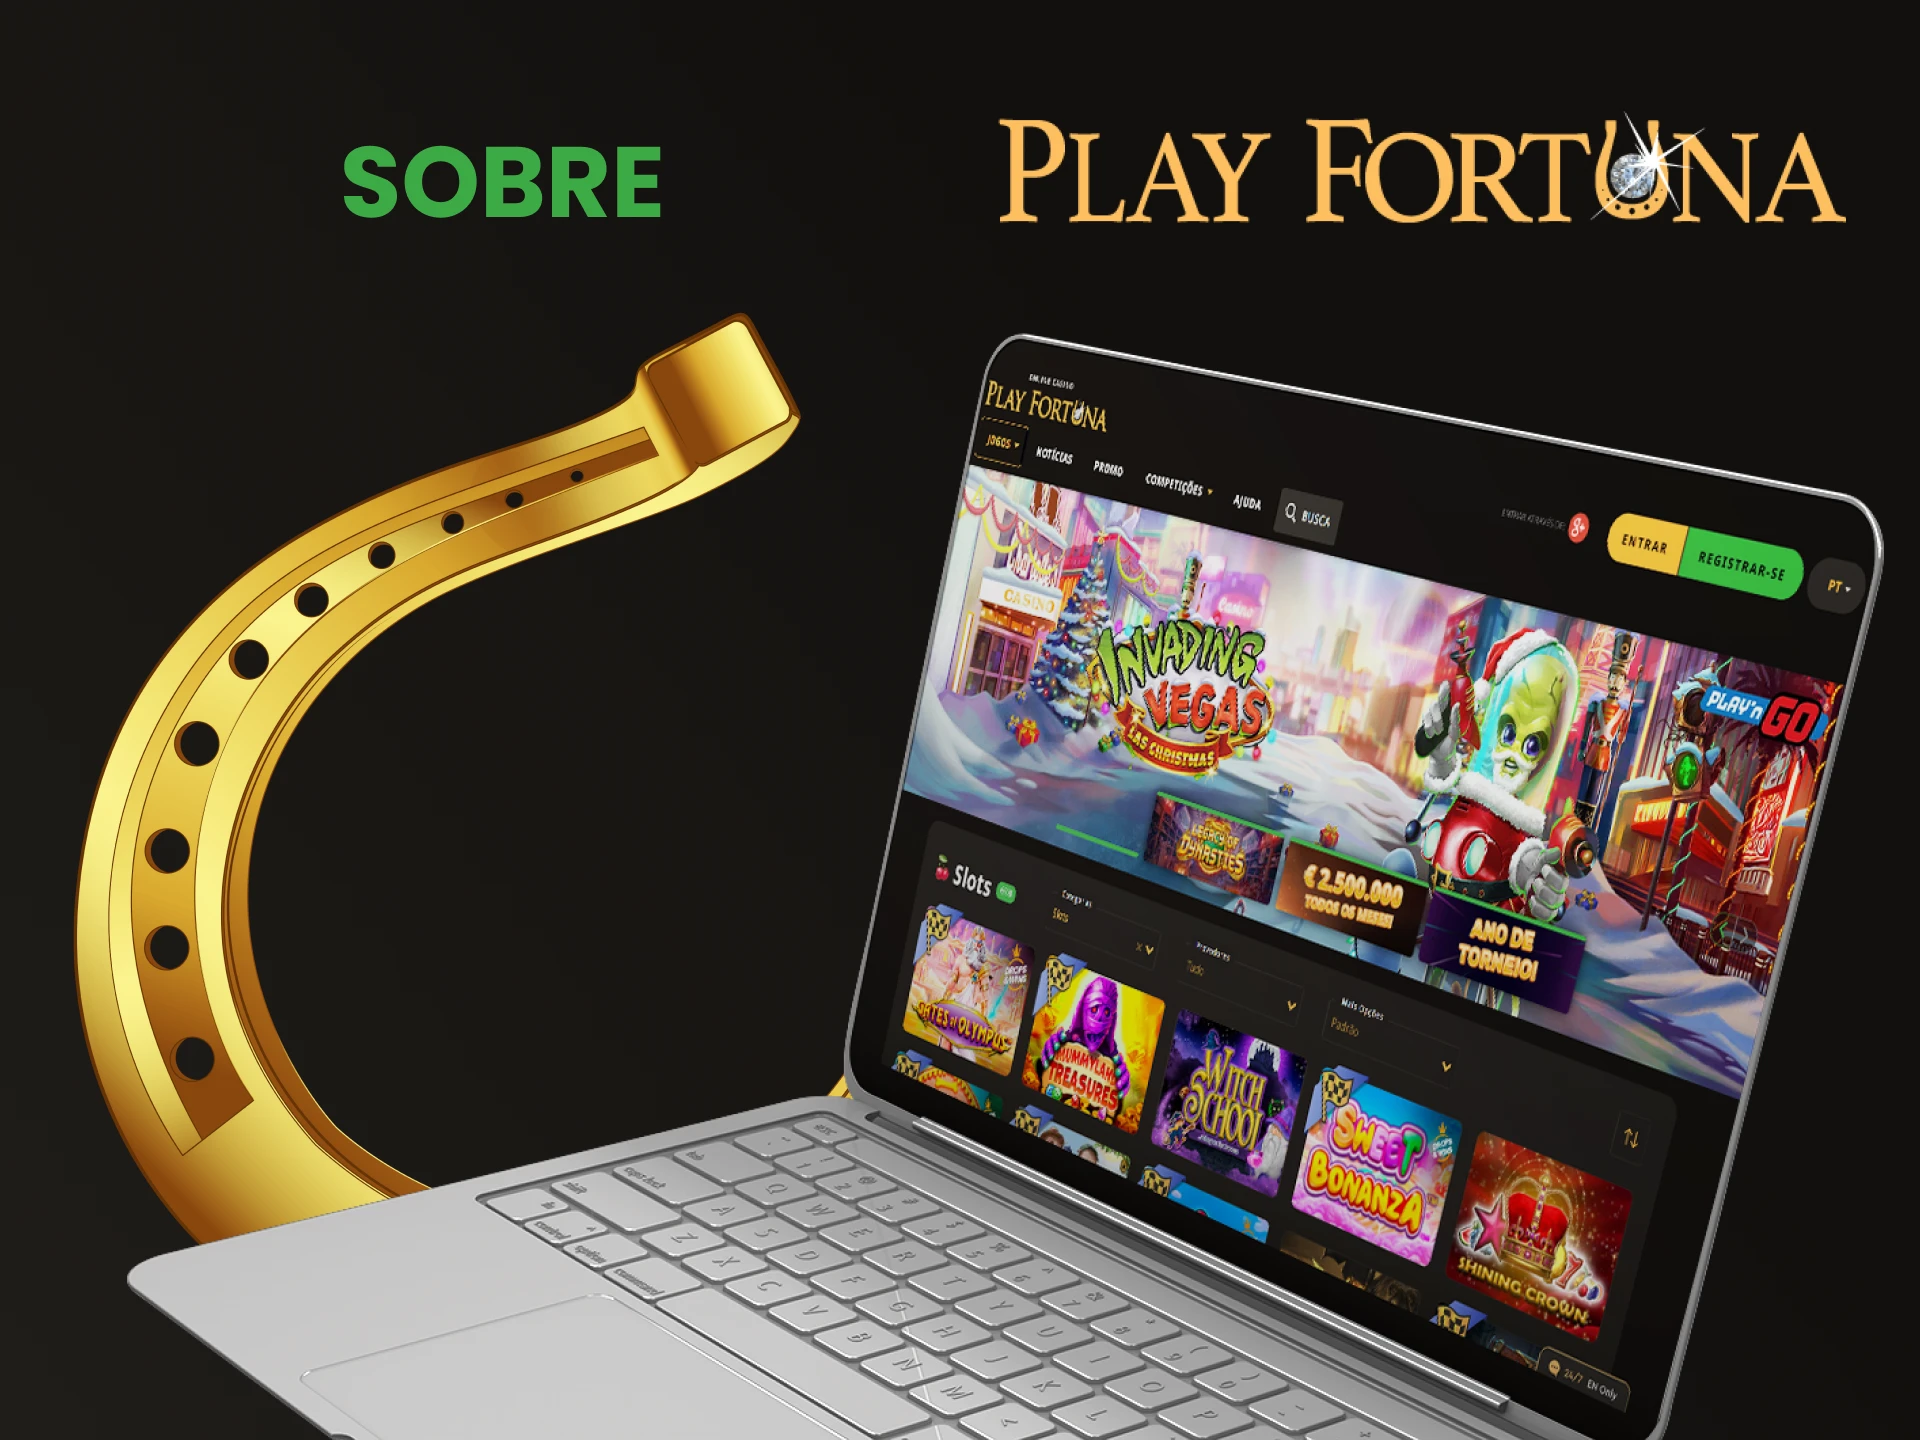 Forneceremos informações sobre o site Play Fortuna.